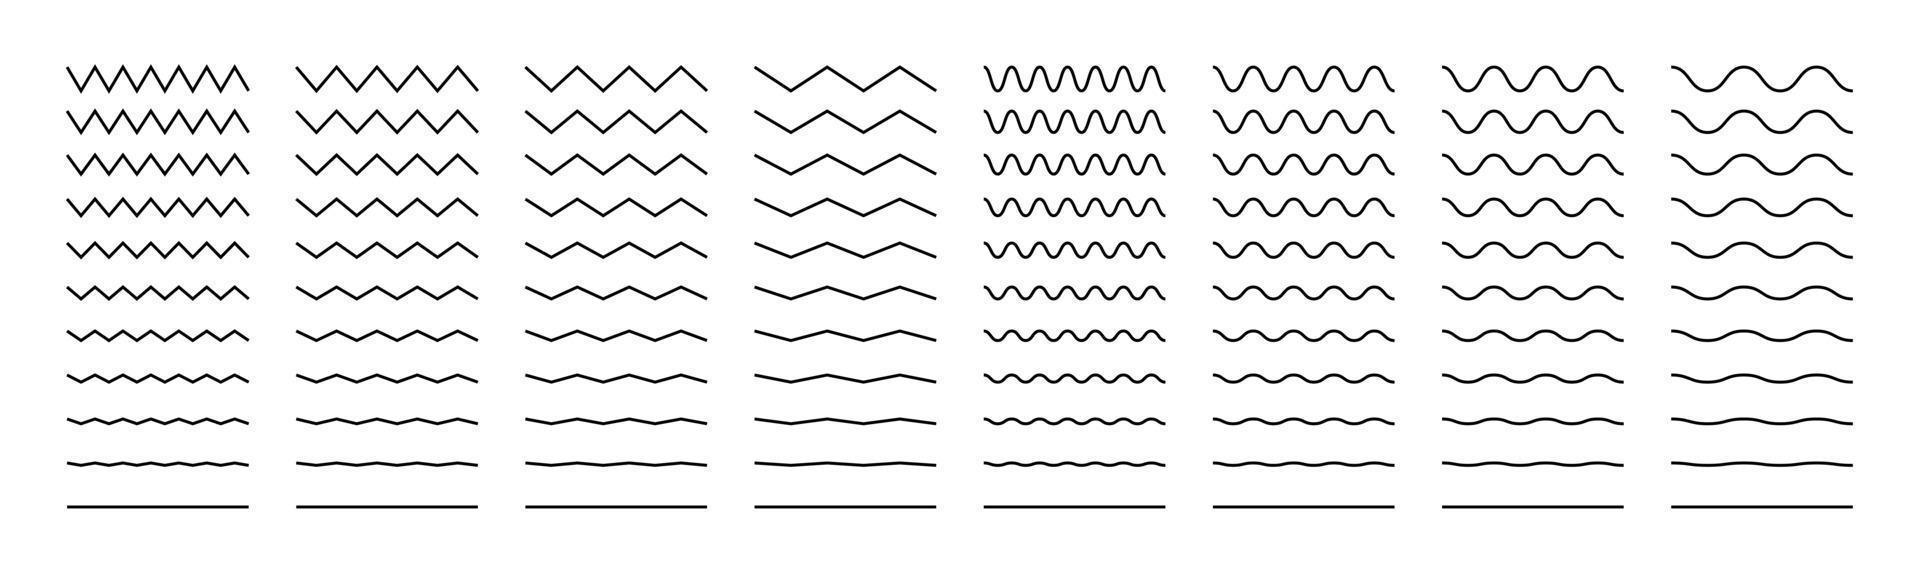 Líneas onduladas, en zigzag y sinusoidales. establecer decoración, divisores. ilustración vectorial aislada sobre fondo blanco. vector